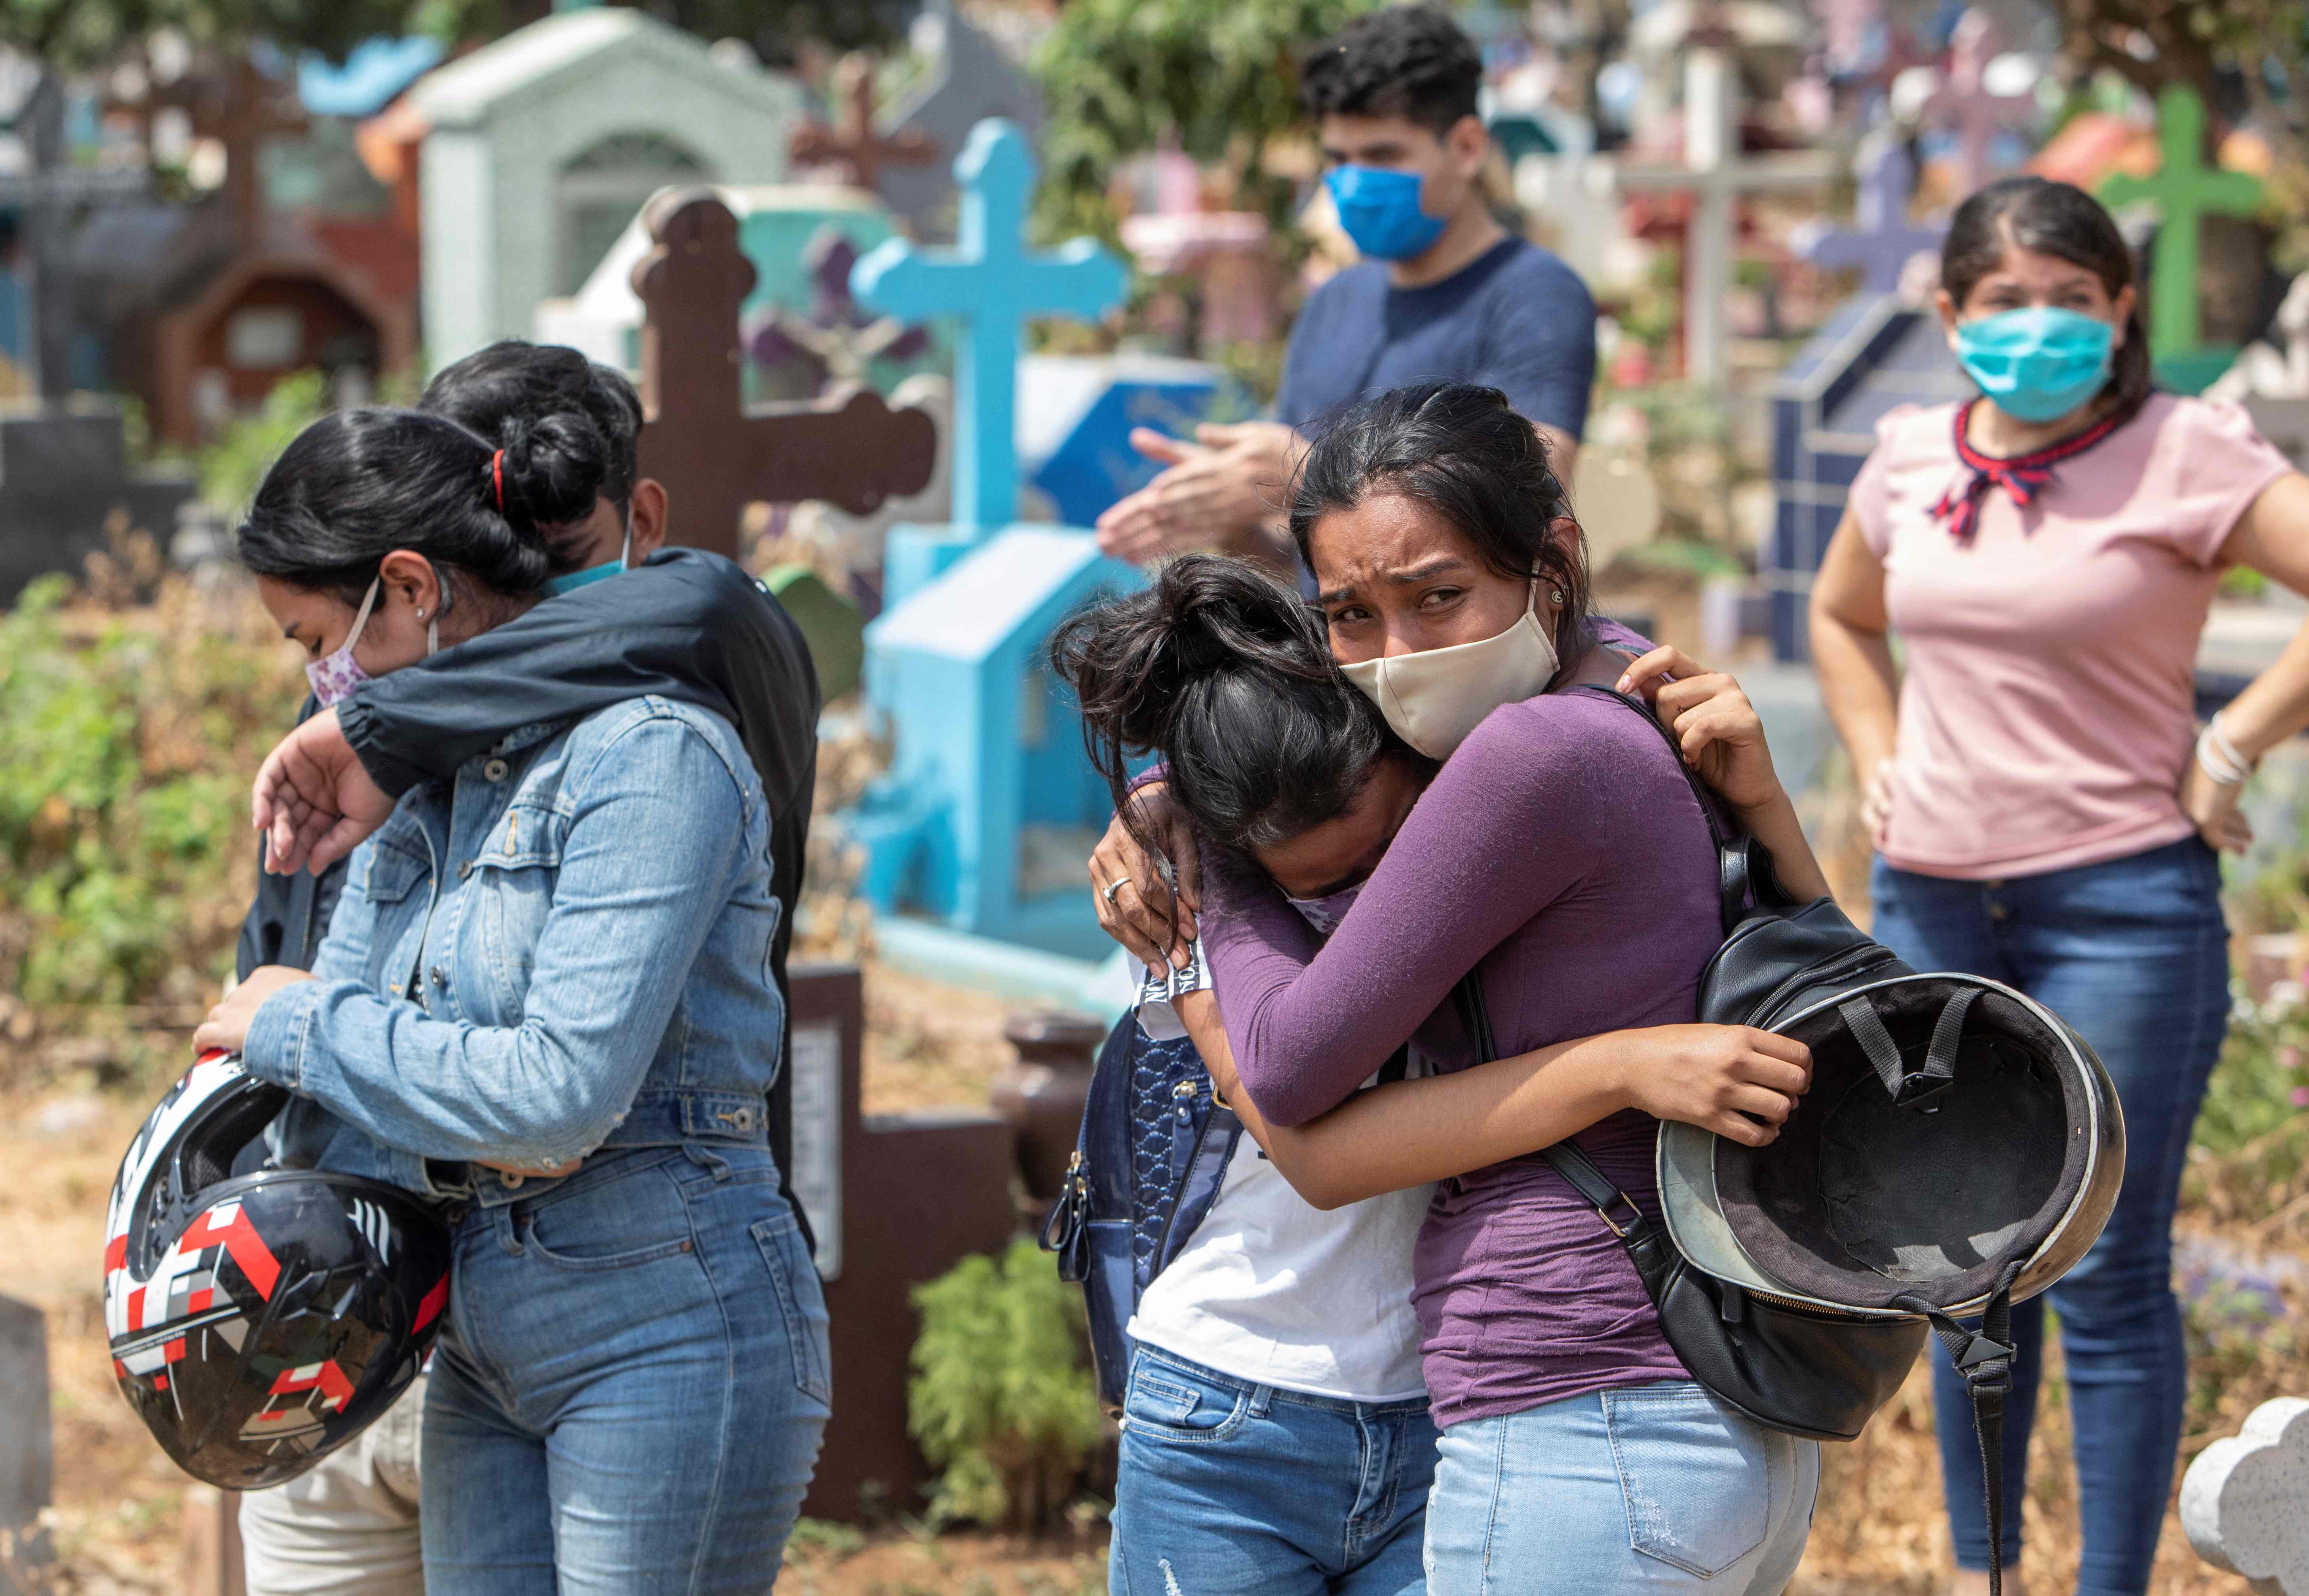 
El gobierno de Nicaragua registra seis mil 299 casos y 170 fallecidos por covid-19, pero hay quienes creen que las cifras son superiores. (Foto Prensa Libre: AFP)
